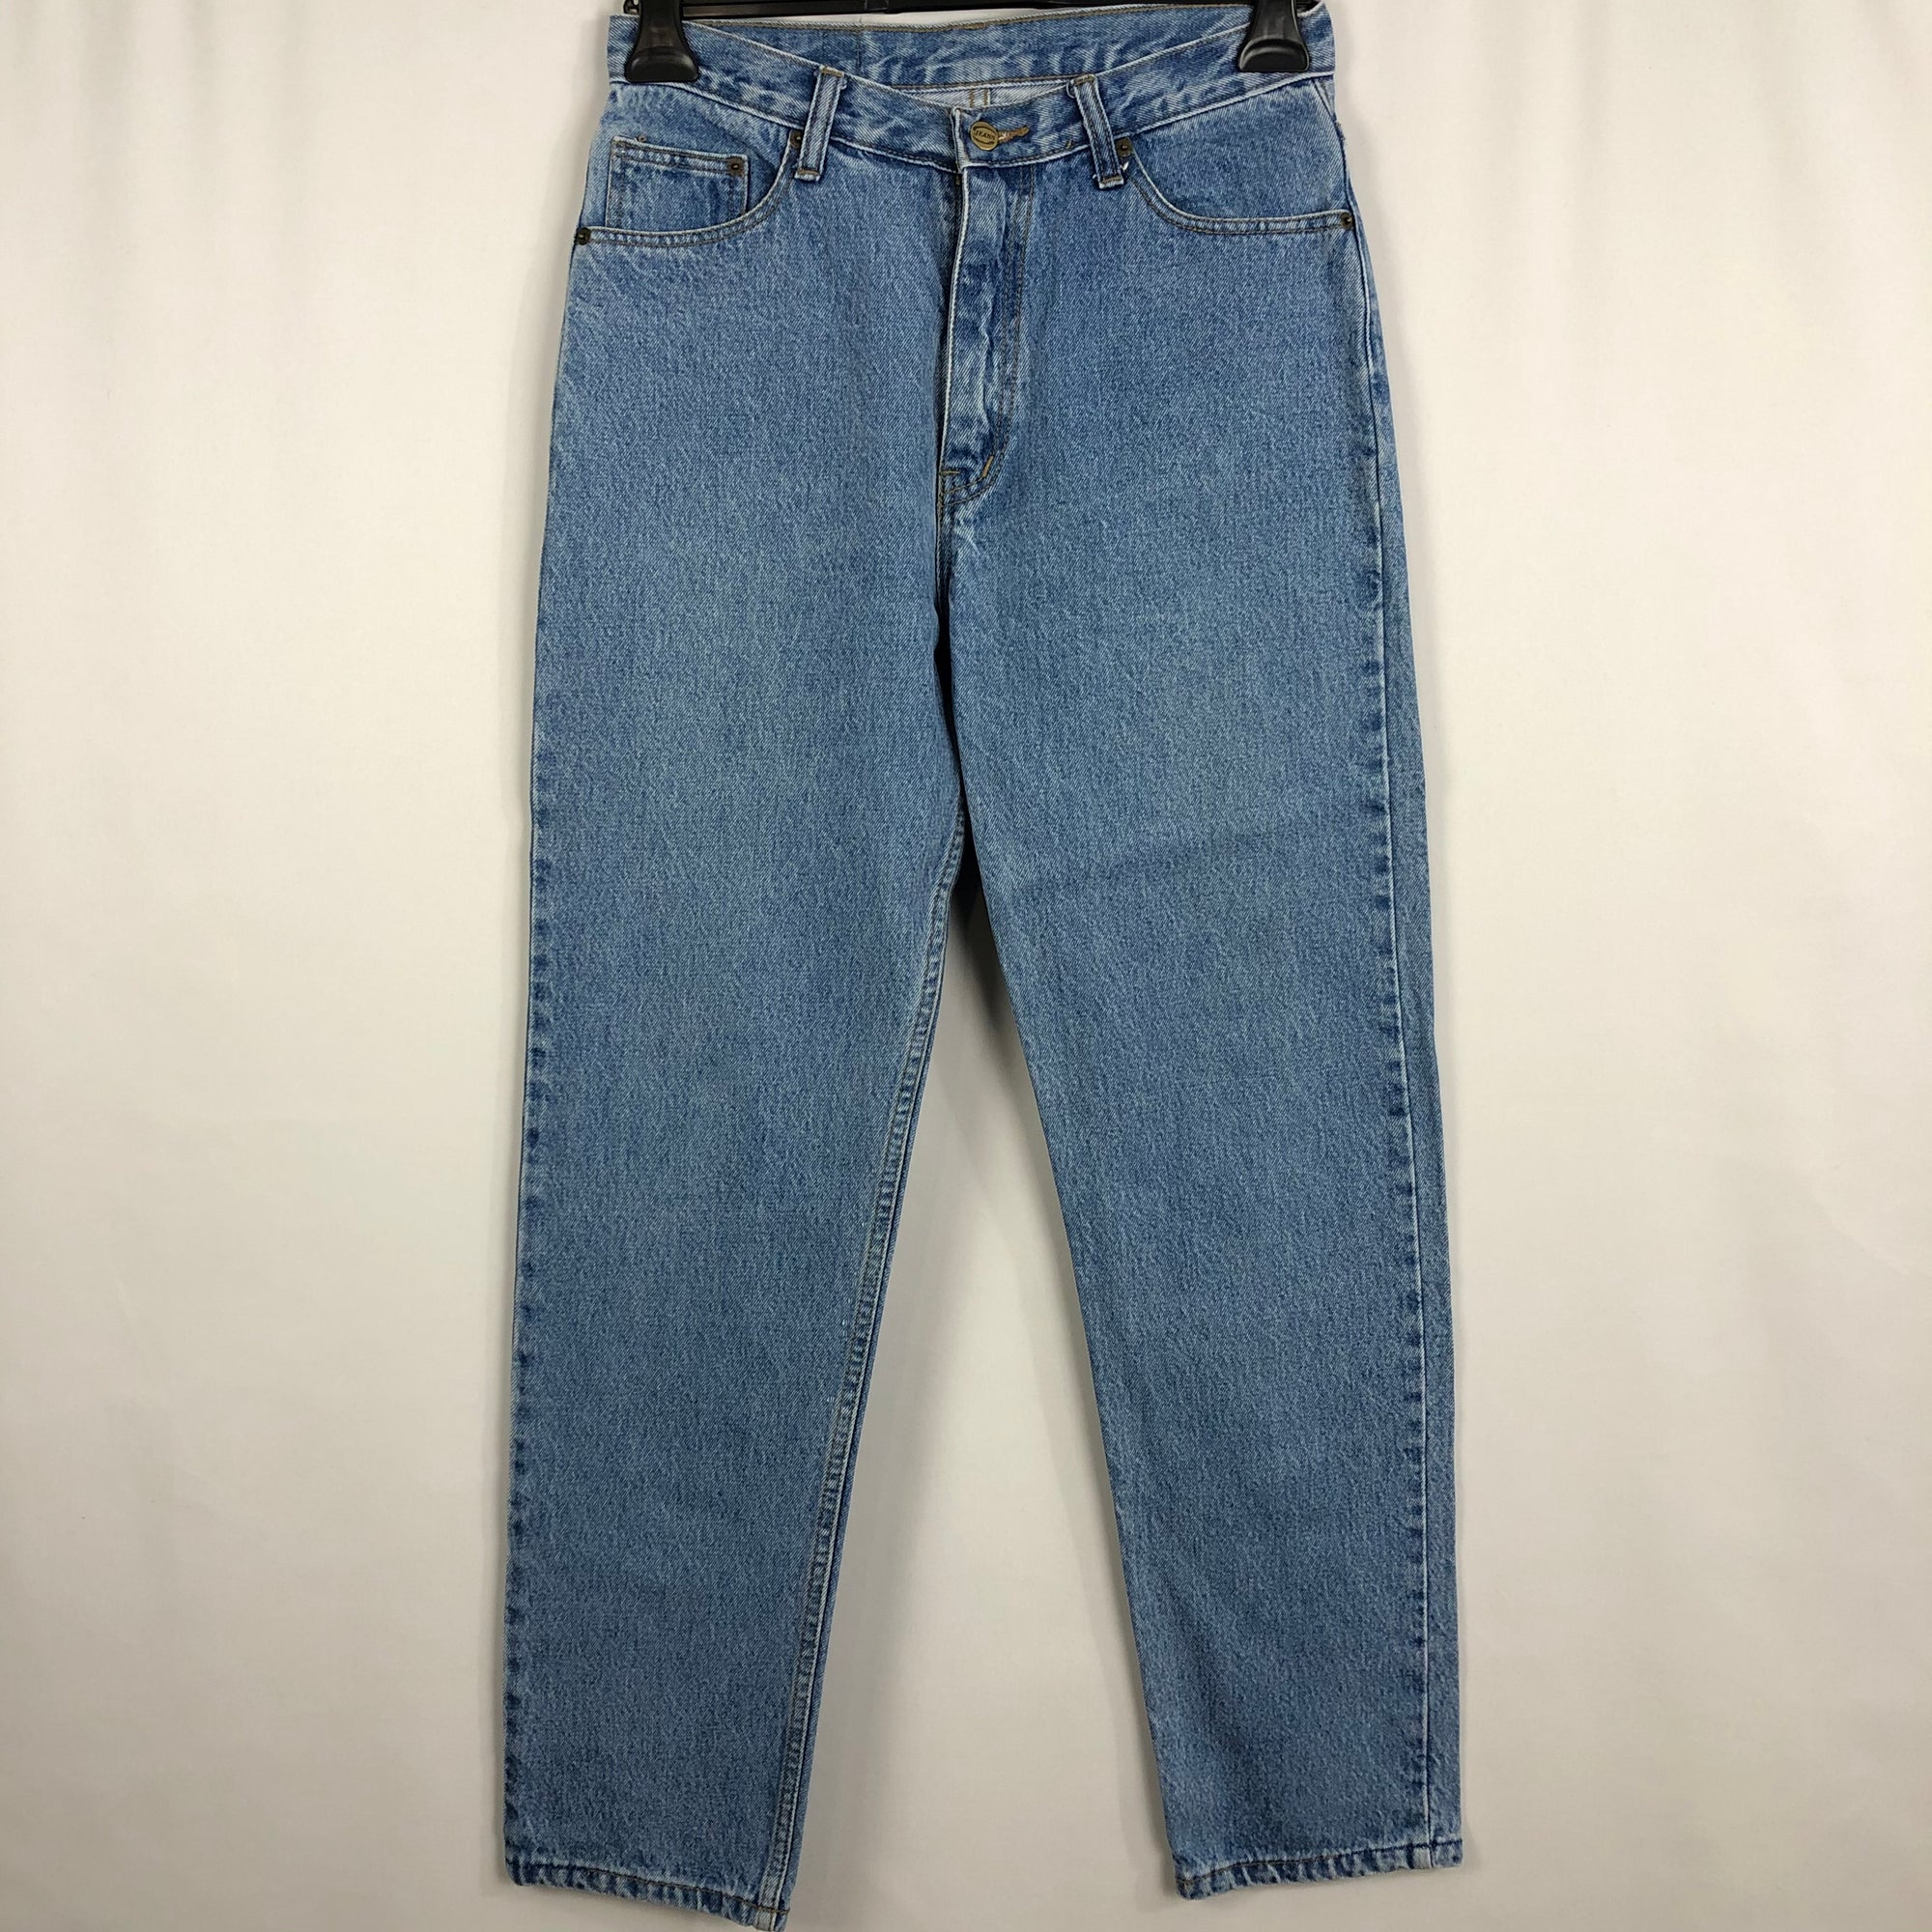 Vintage 90s Gassy Light Wash Jeans - W32/L32